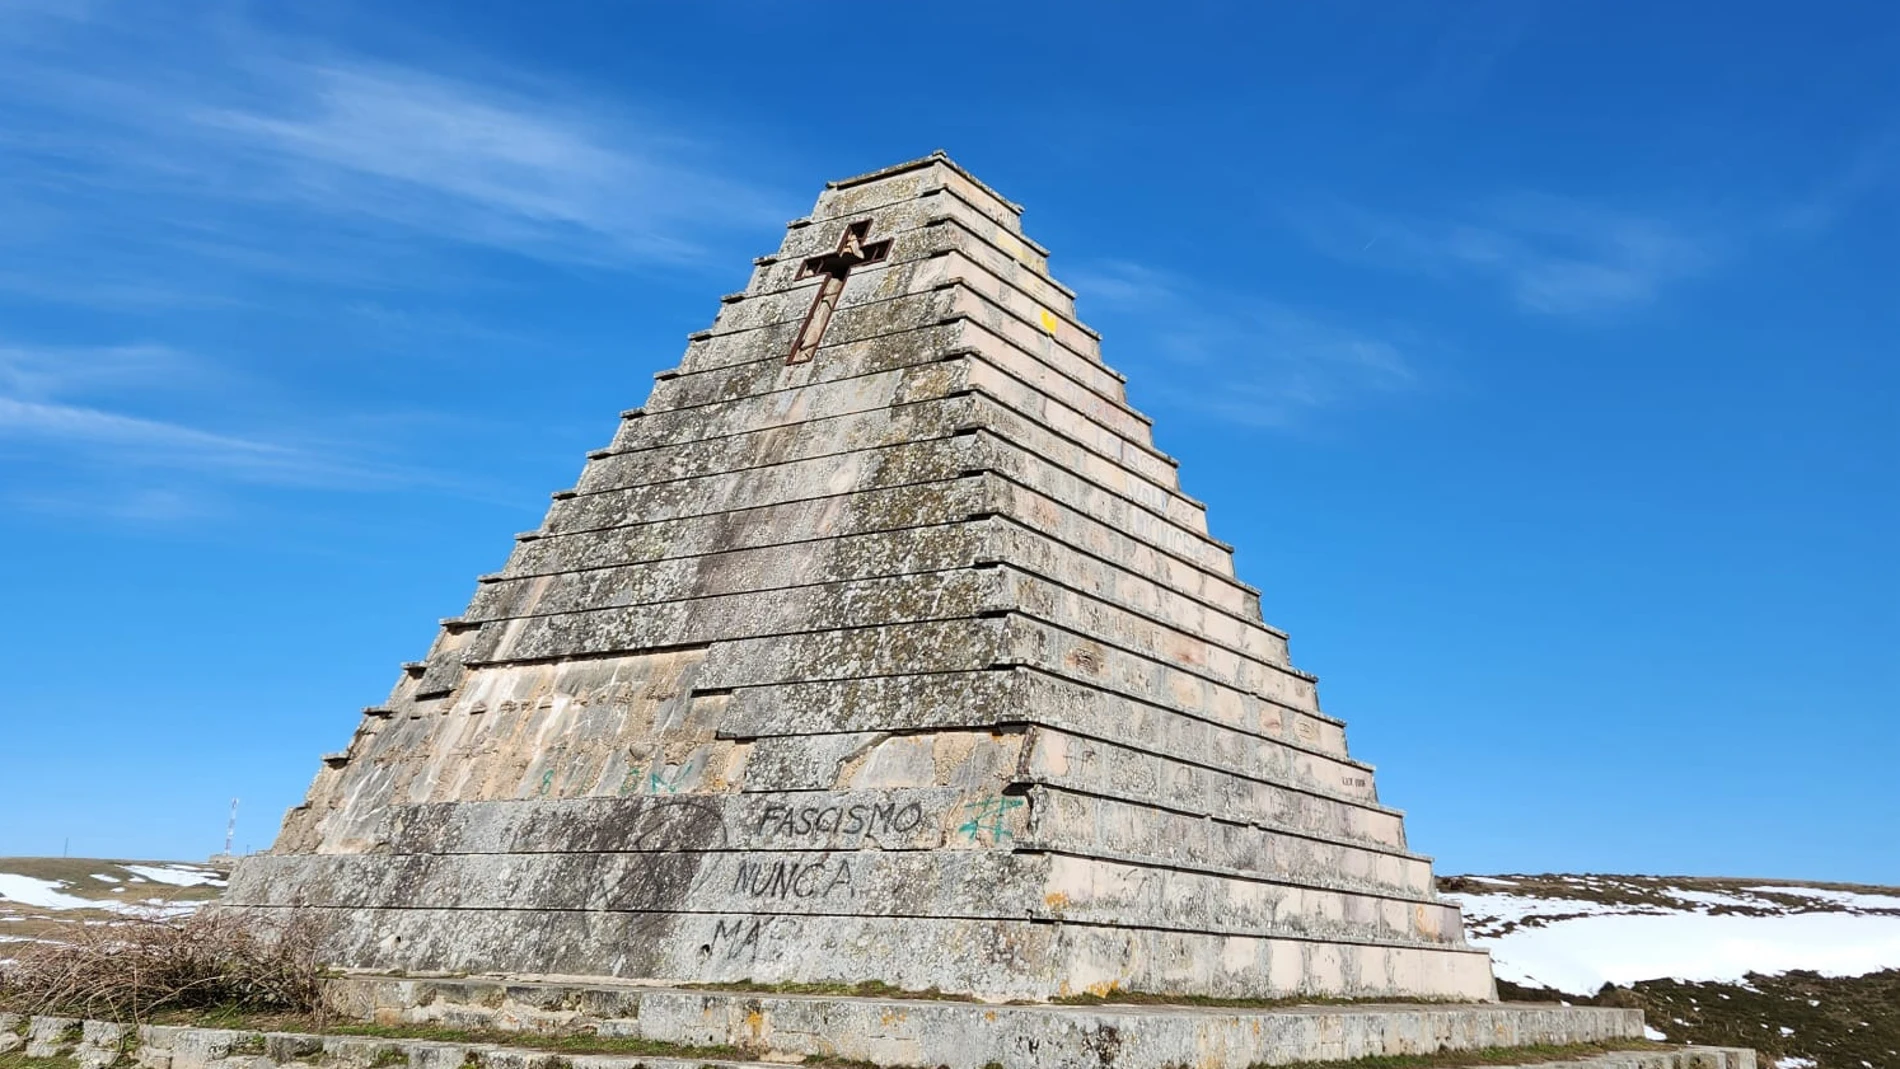 Vista de la Pirámide de los Italianos desde su parte posterior, donde es visible el deterioro de la fachada